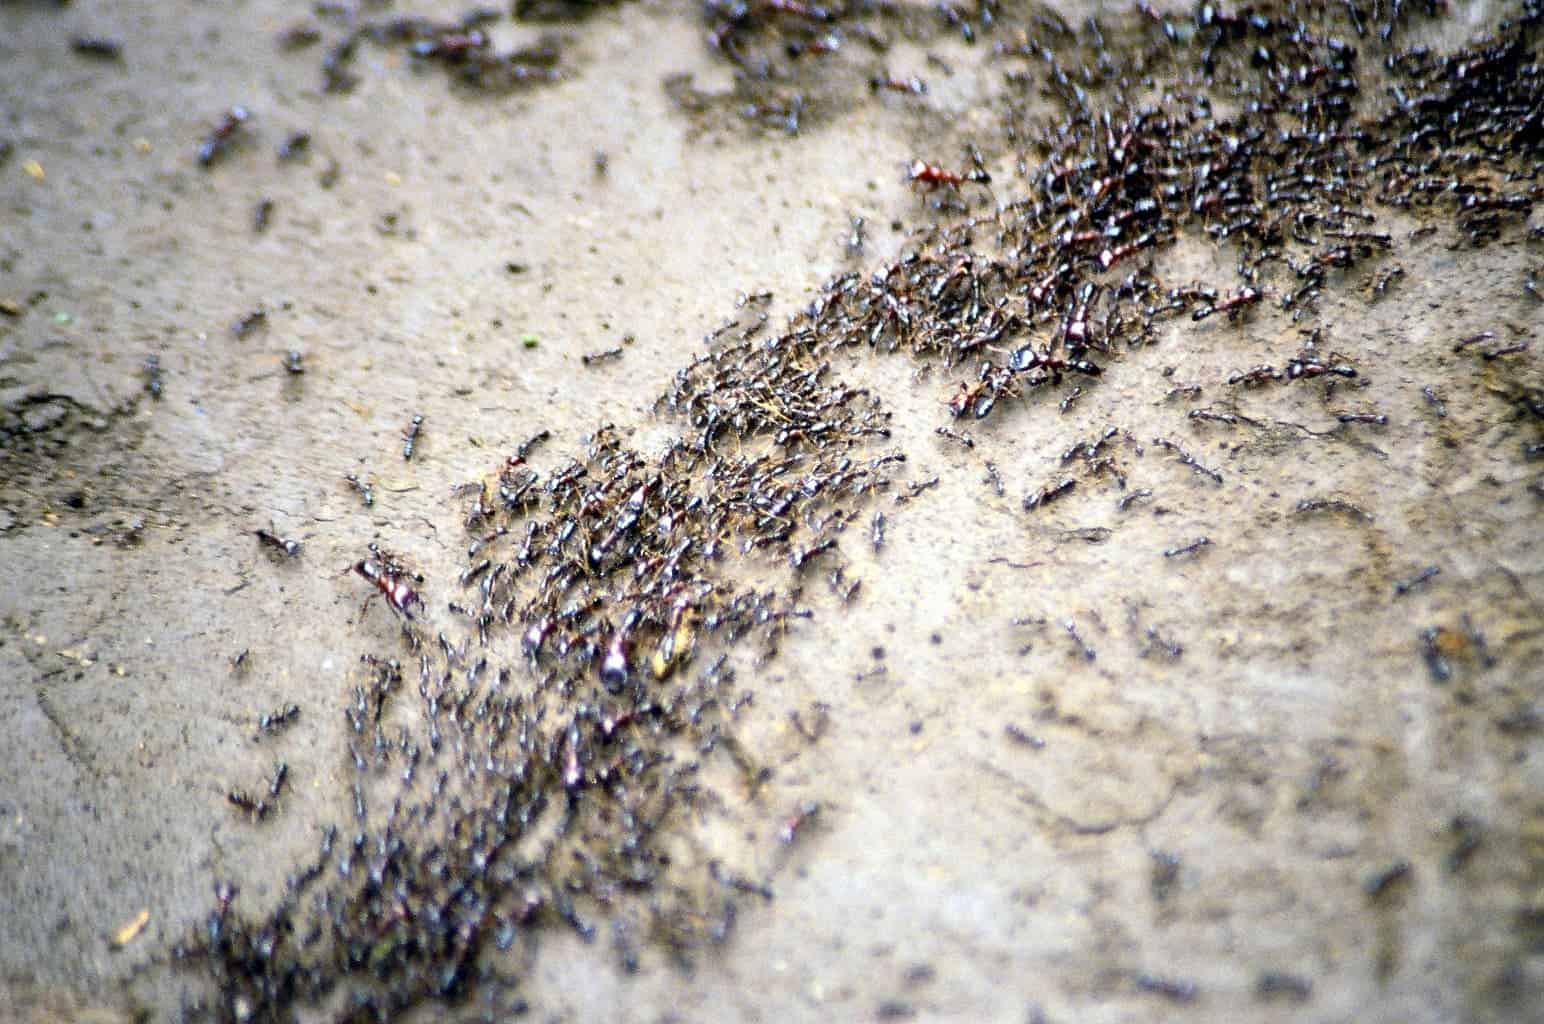 Safari ants (genus Dorylus). Image credits: Mehmet Karatay.